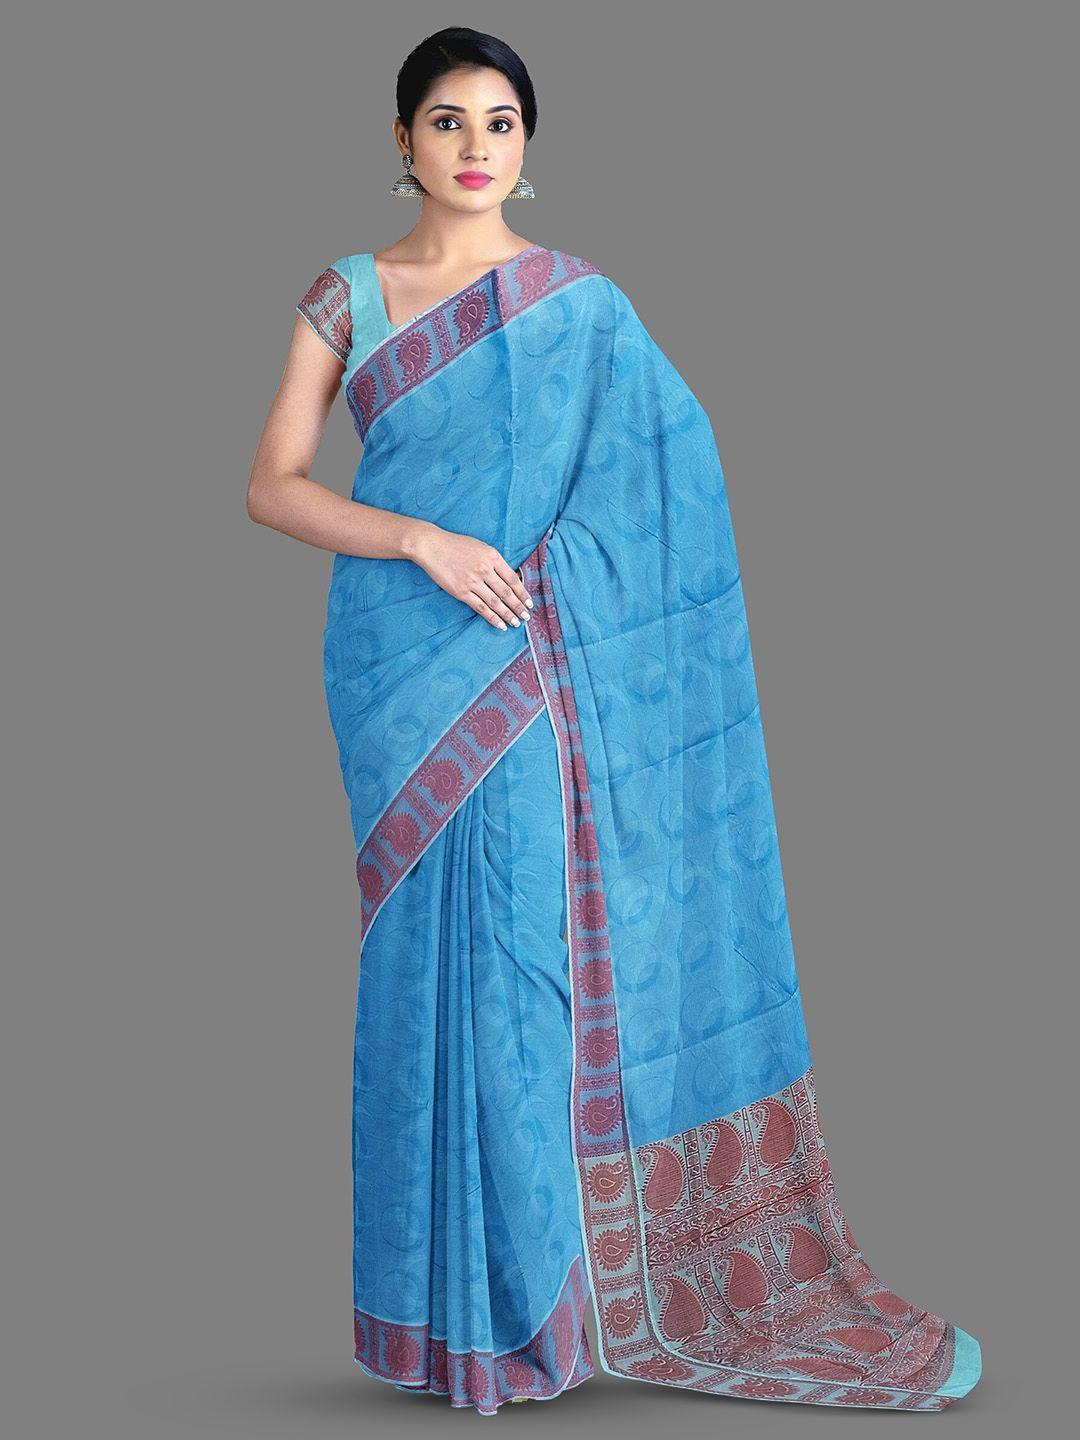 the-chennai-silks-geometric-printed-pure-cotton-kovai-saree